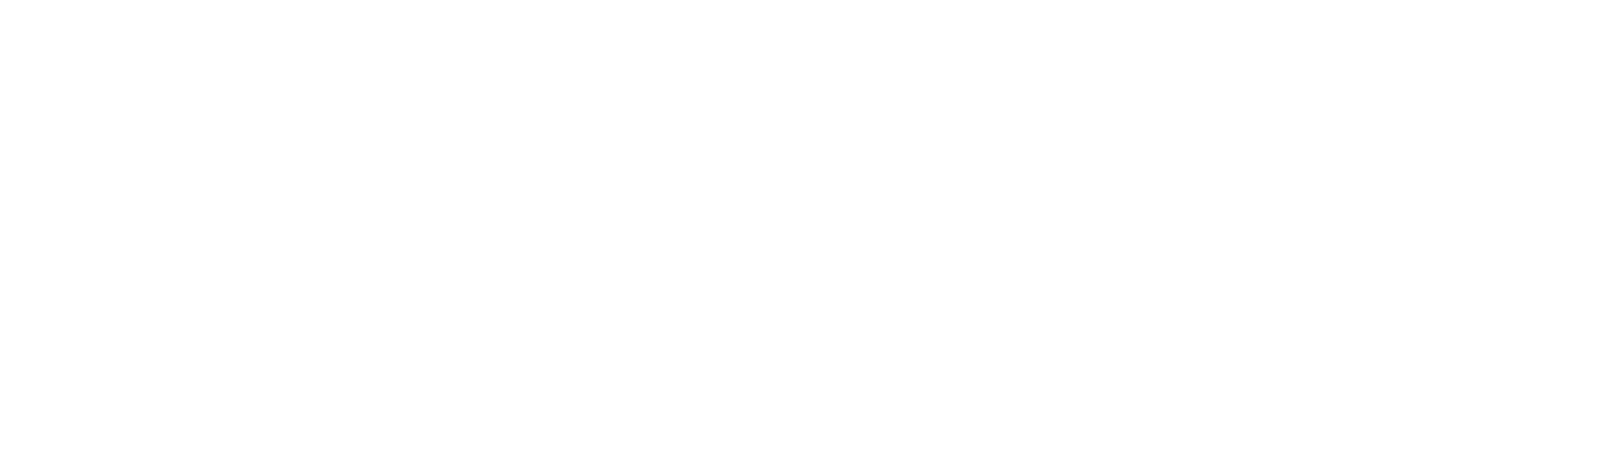 Ebos Group logo grand pour les fonds sombres (PNG transparent)